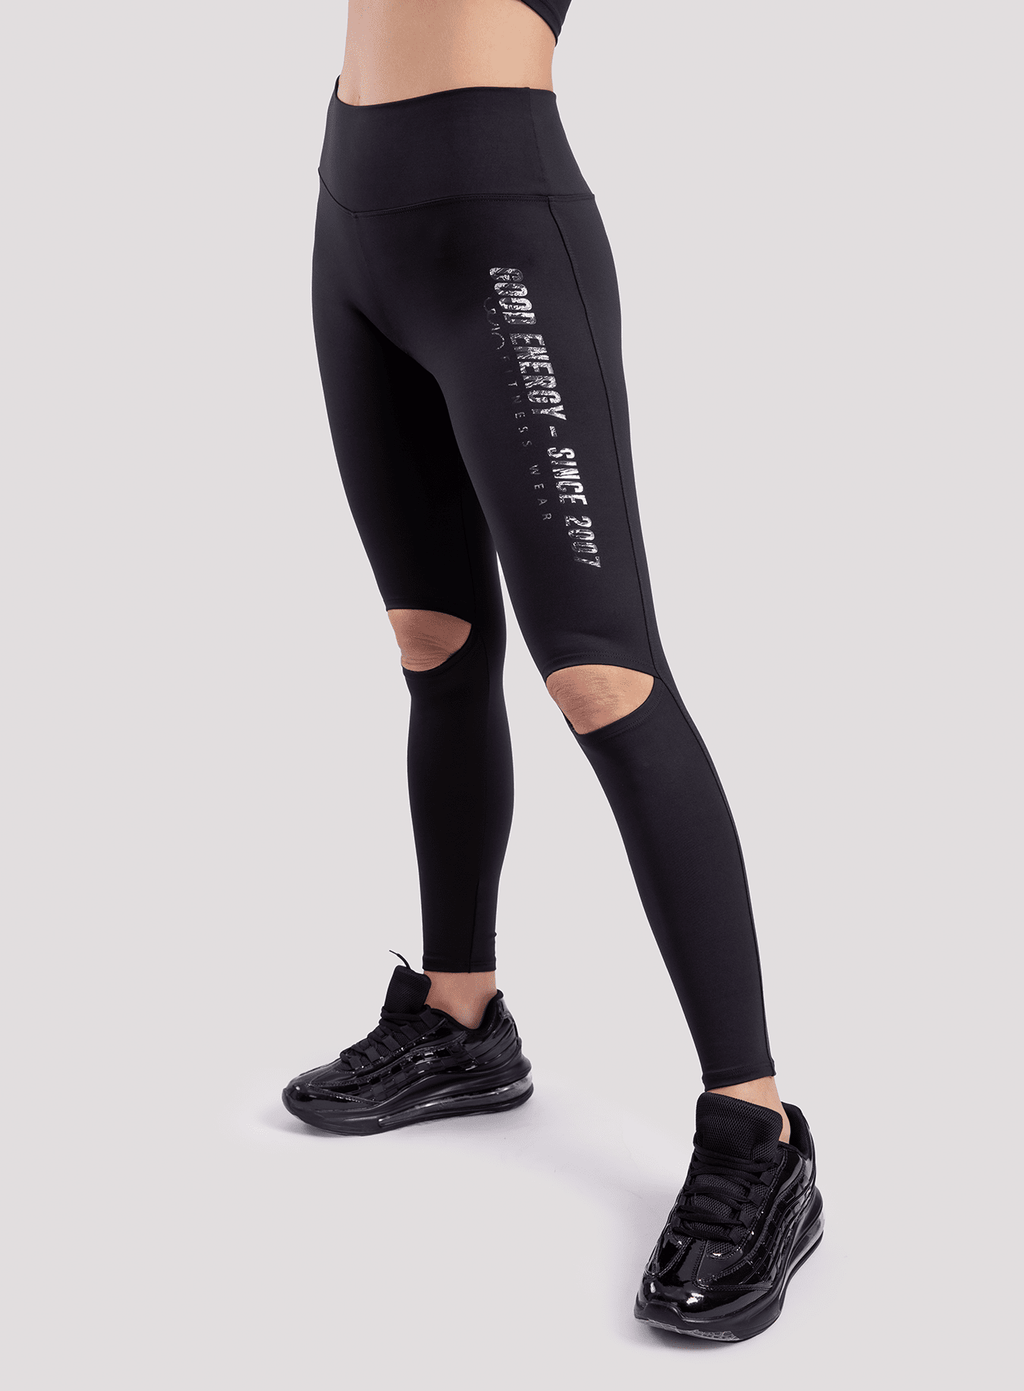 Leggin Good Energy - Black LEGGINGS WinFitnesswear 